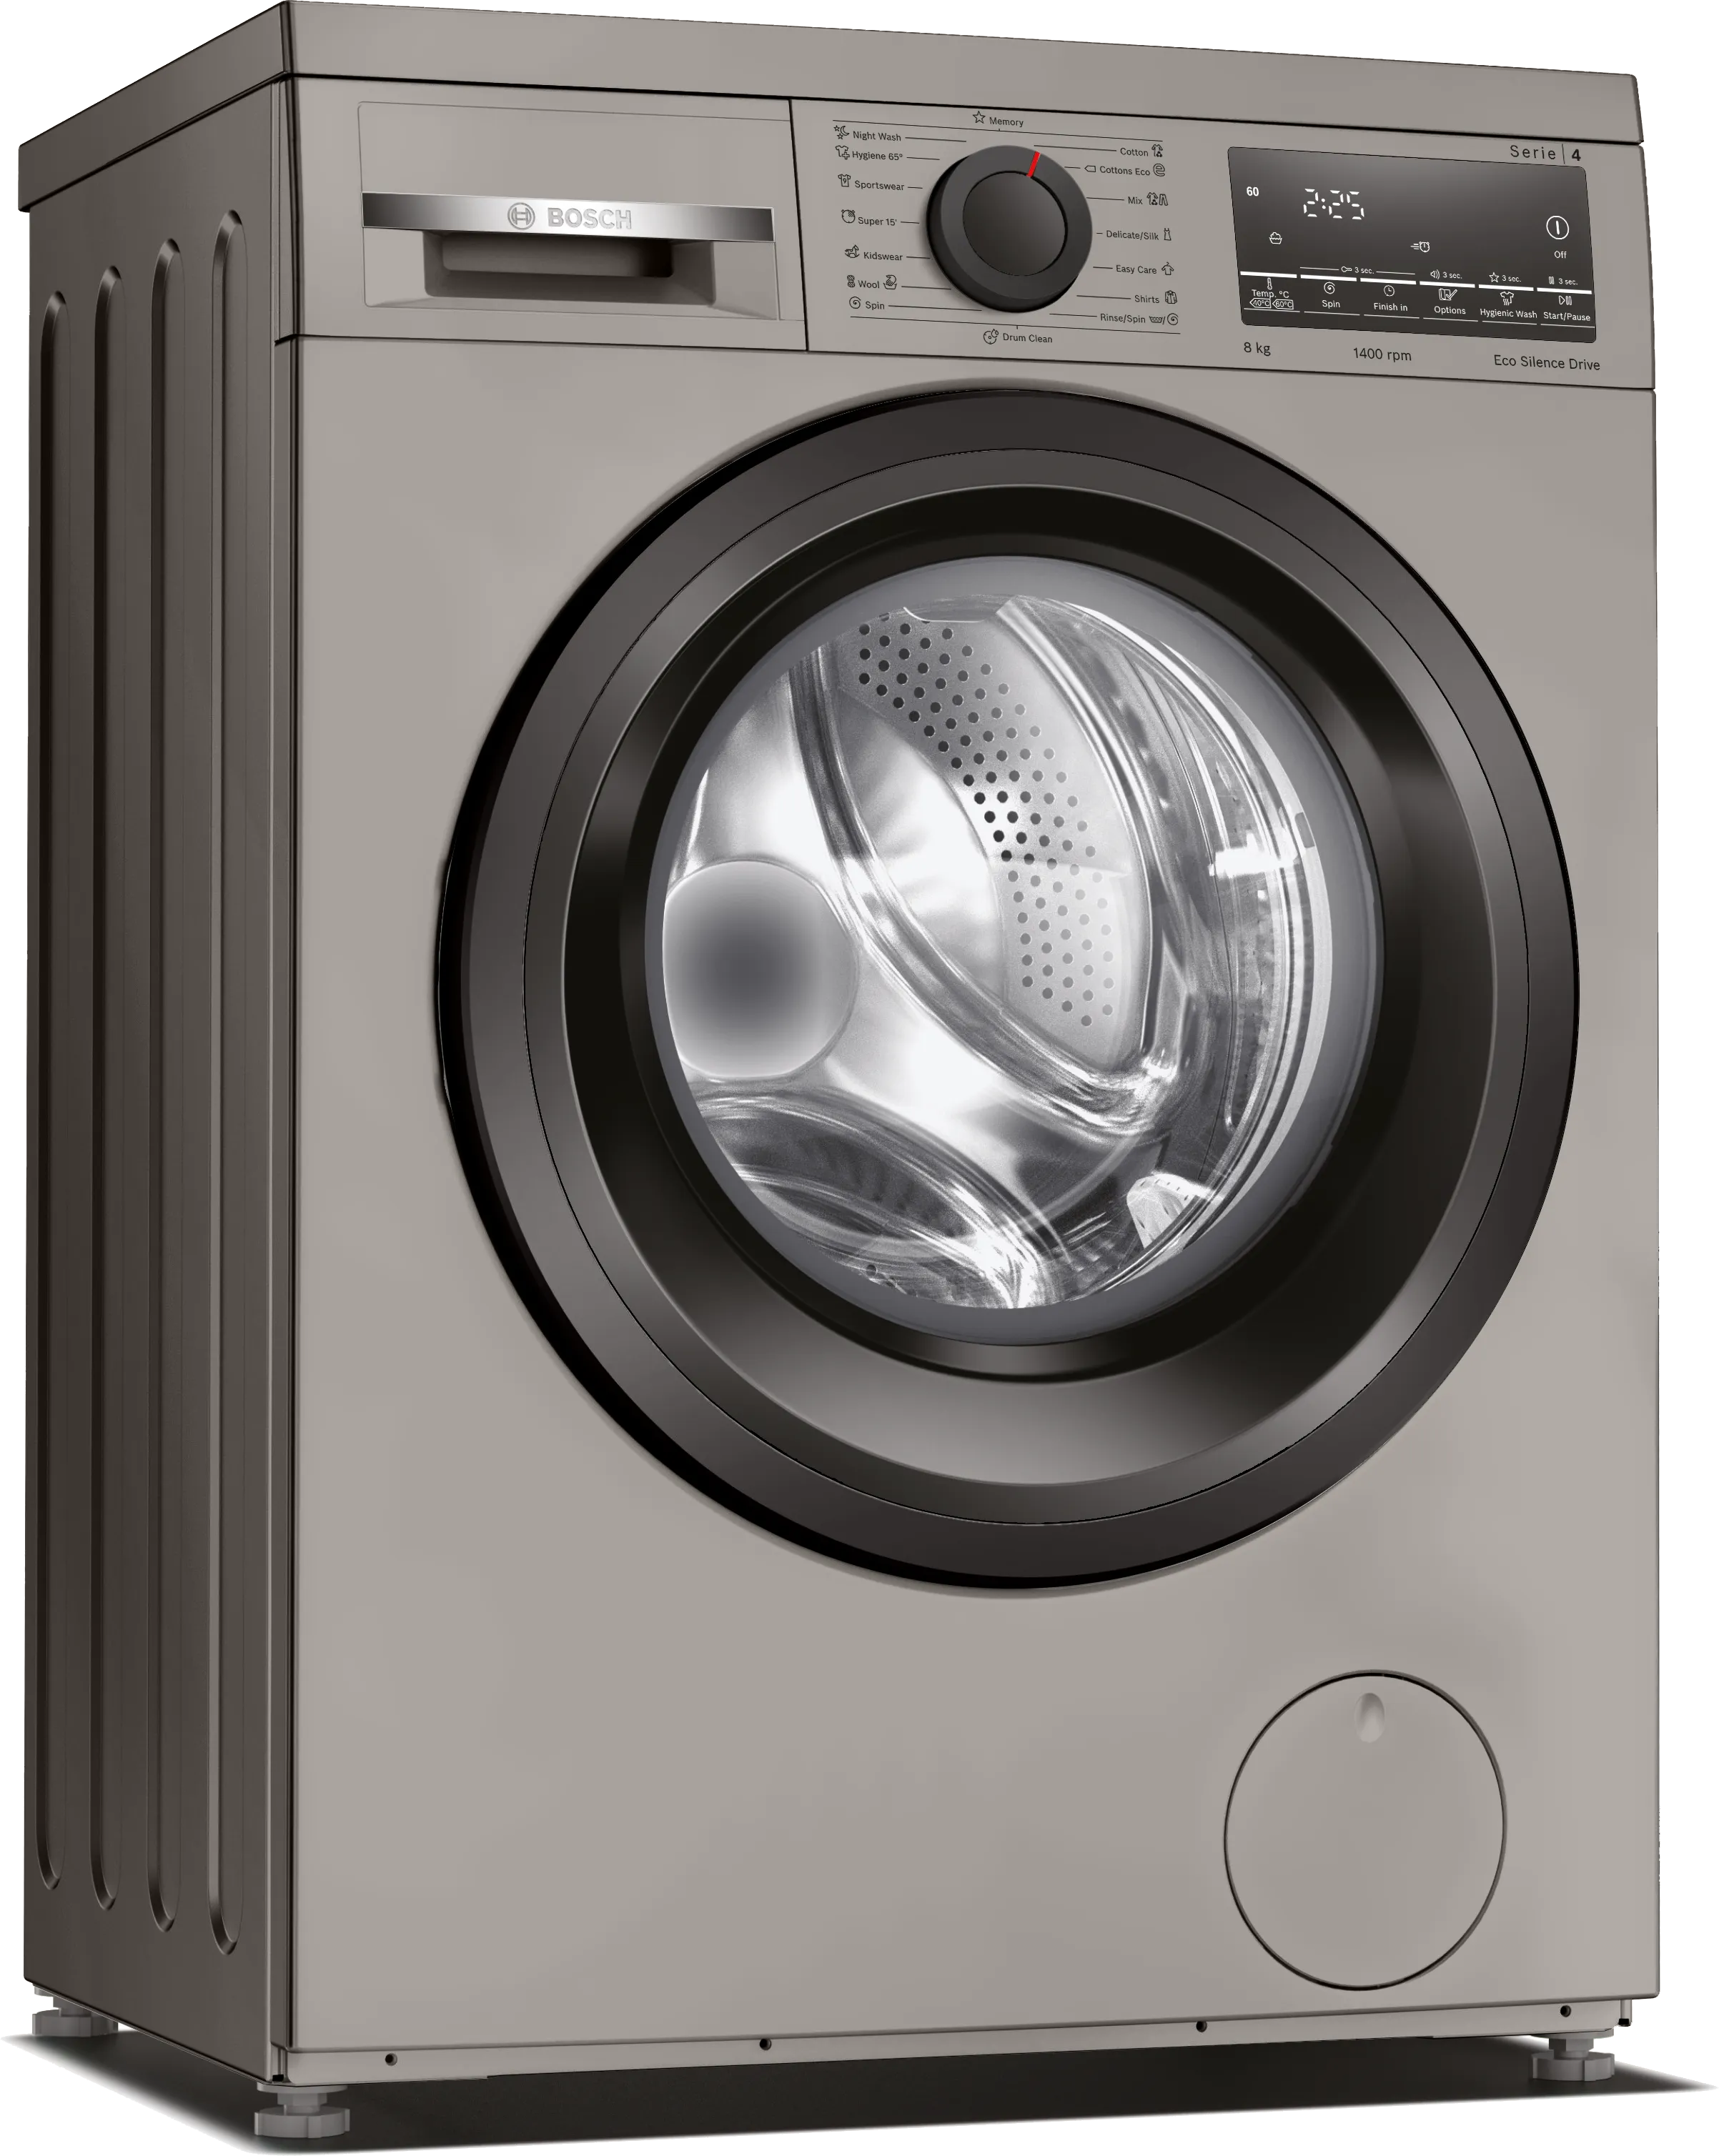 Series 4 washing machine, frontloader 8 kg 1400 rpm 